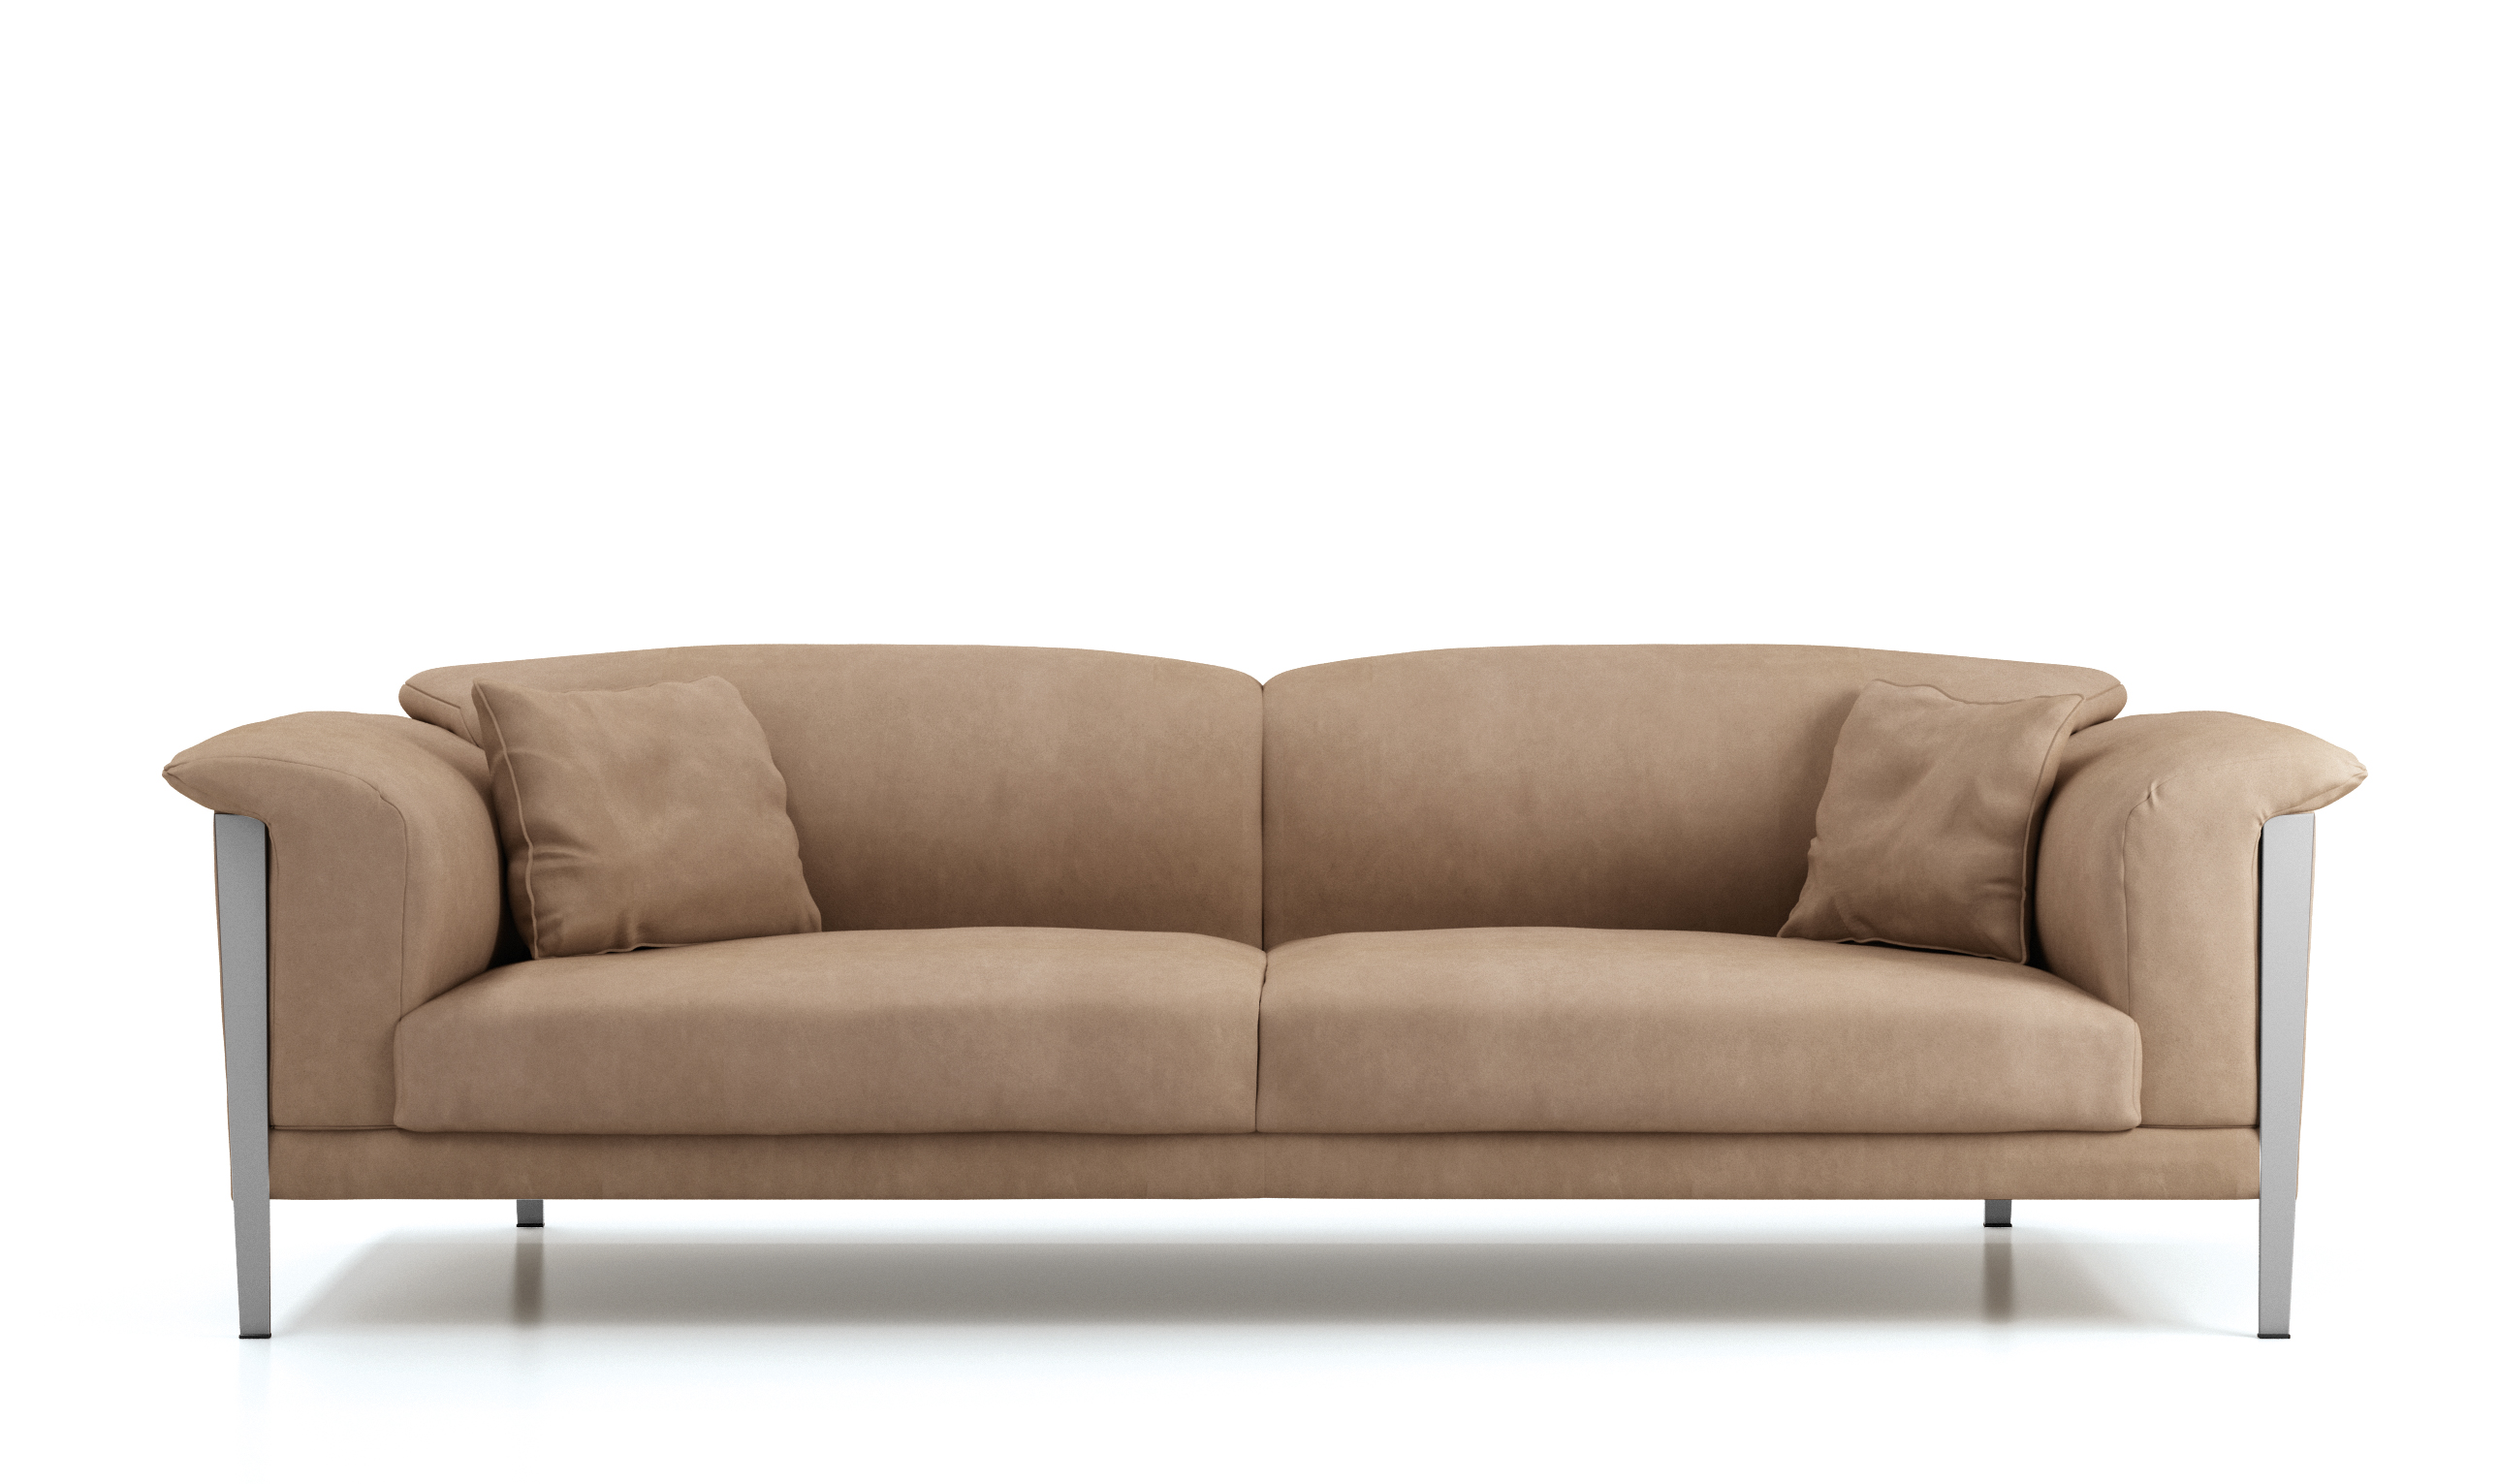 Grudge elephant Making Cream Color Extra Soft Padded Leather Sofa Set Sacramento California  Brianform-New-Spark